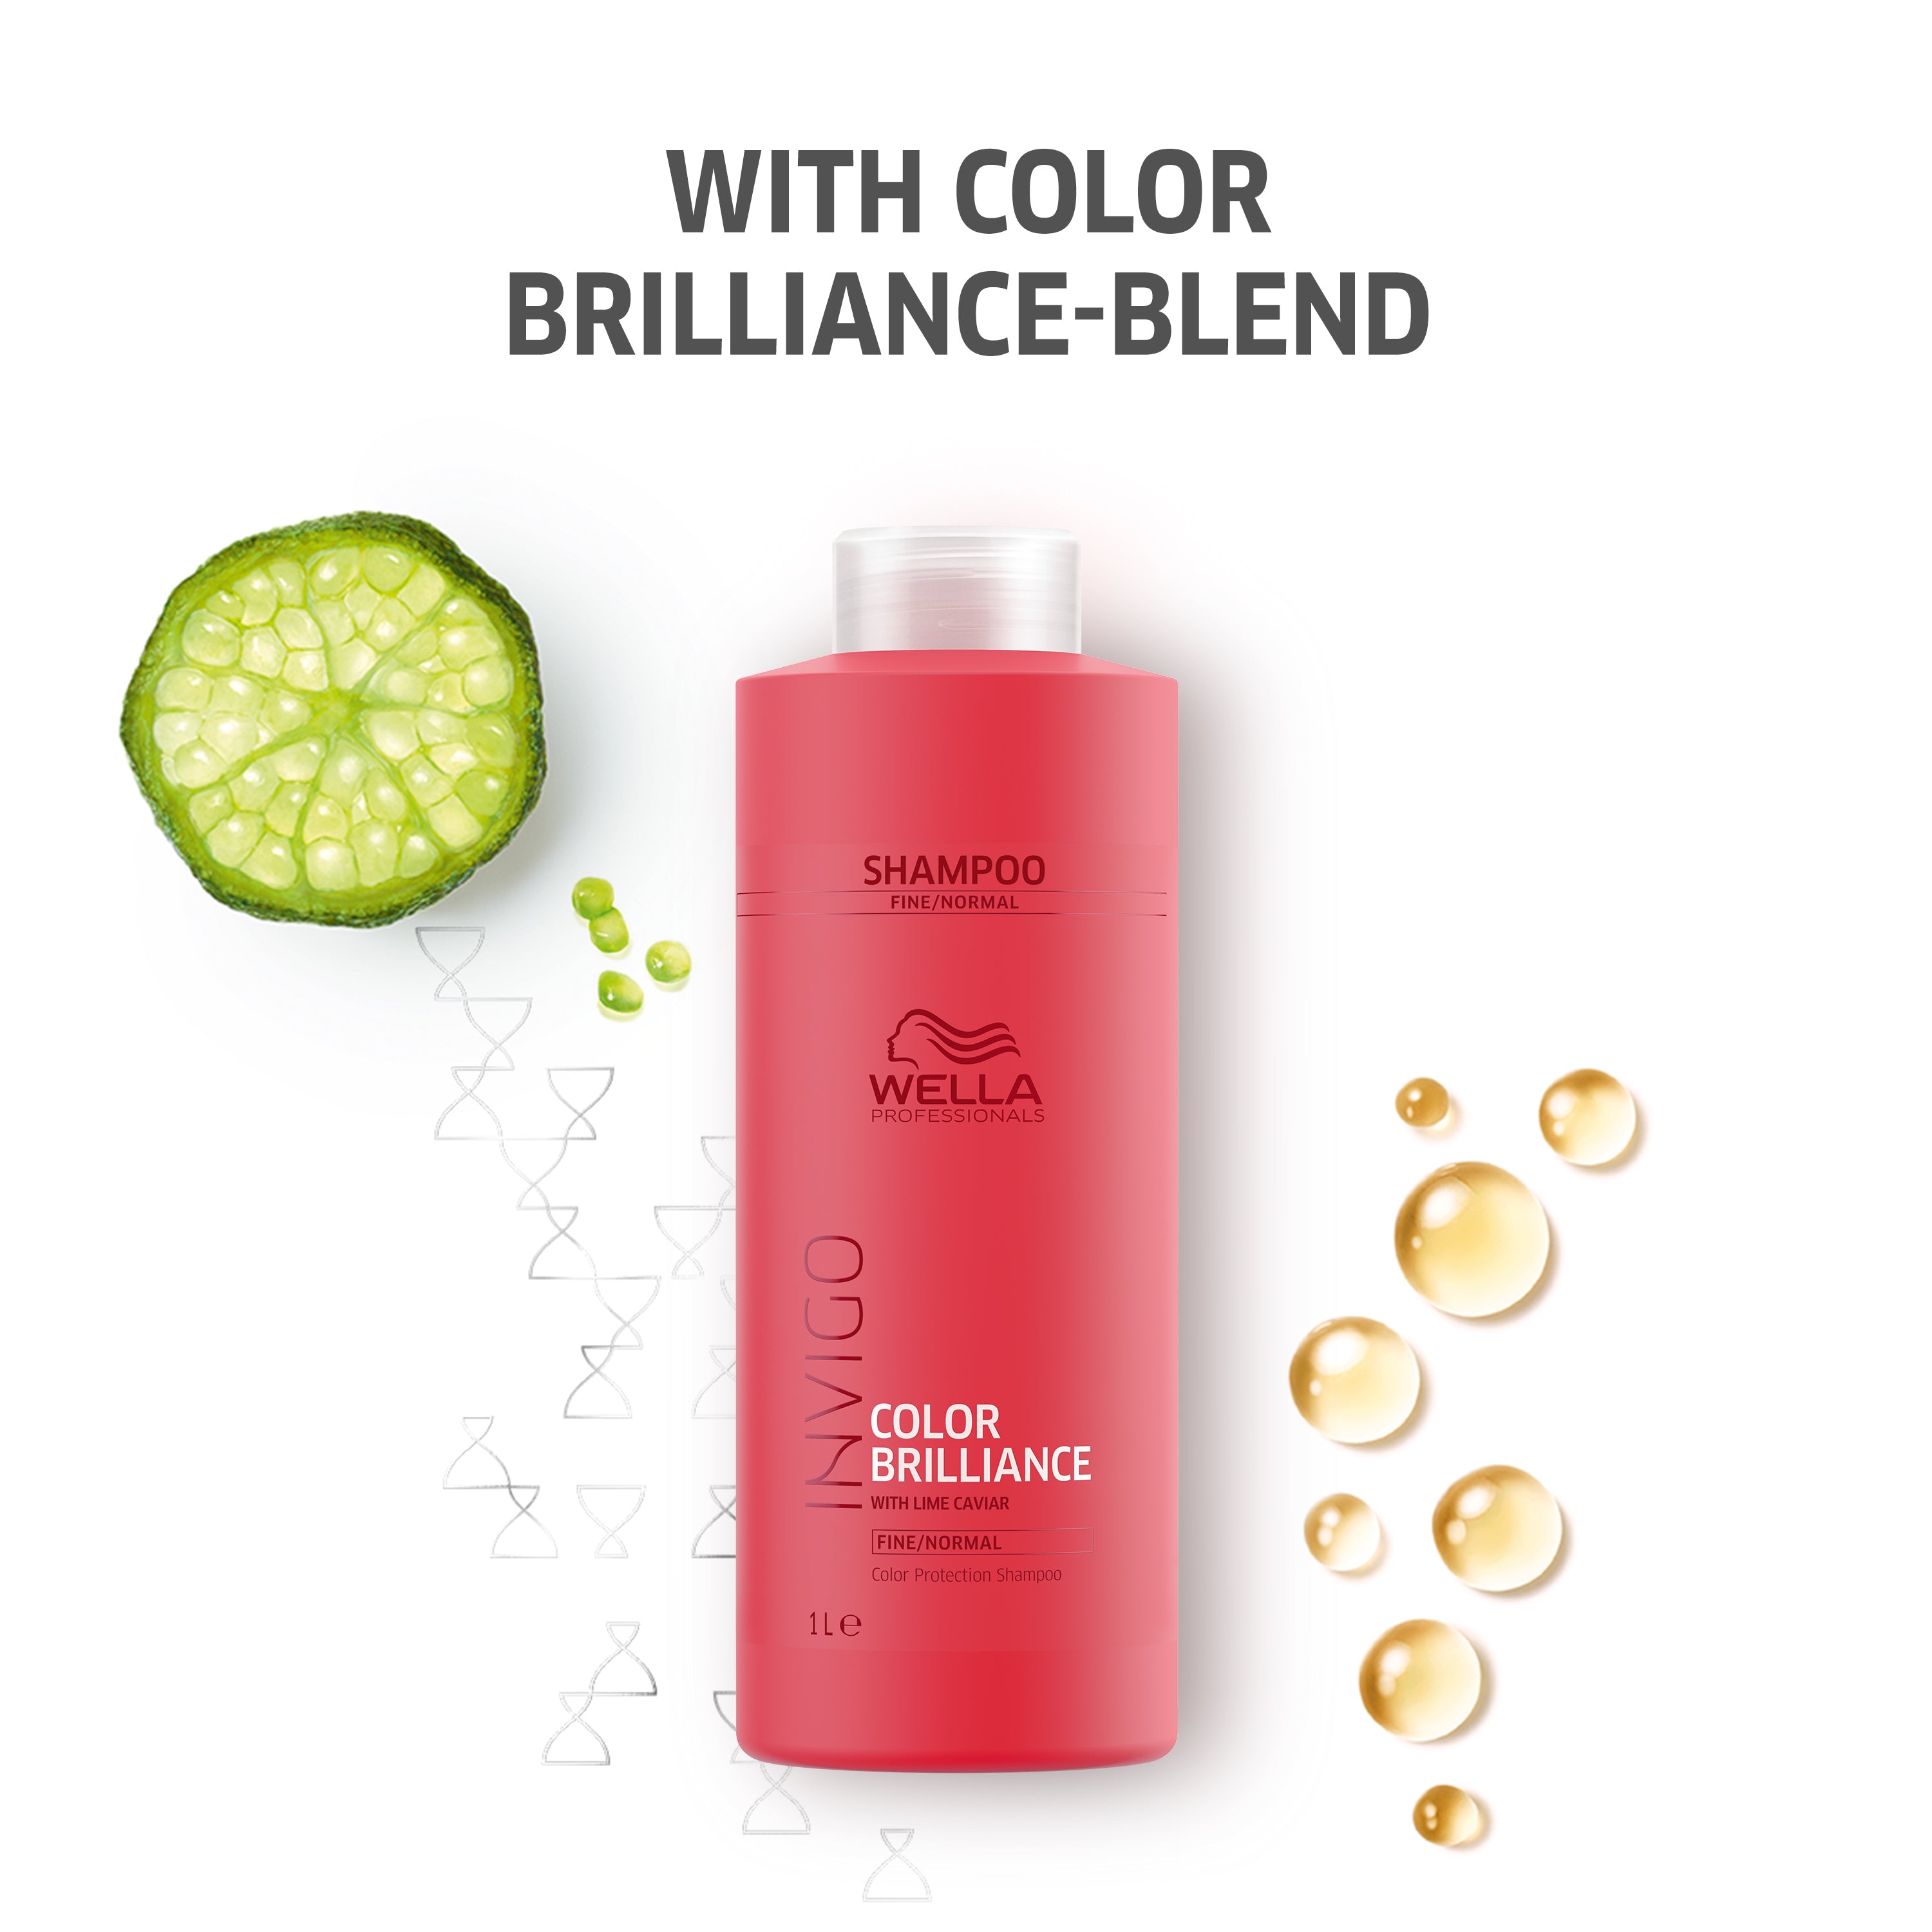 Wella Invigo Color Brilliance Colour Protection Shampoo 1 Litre